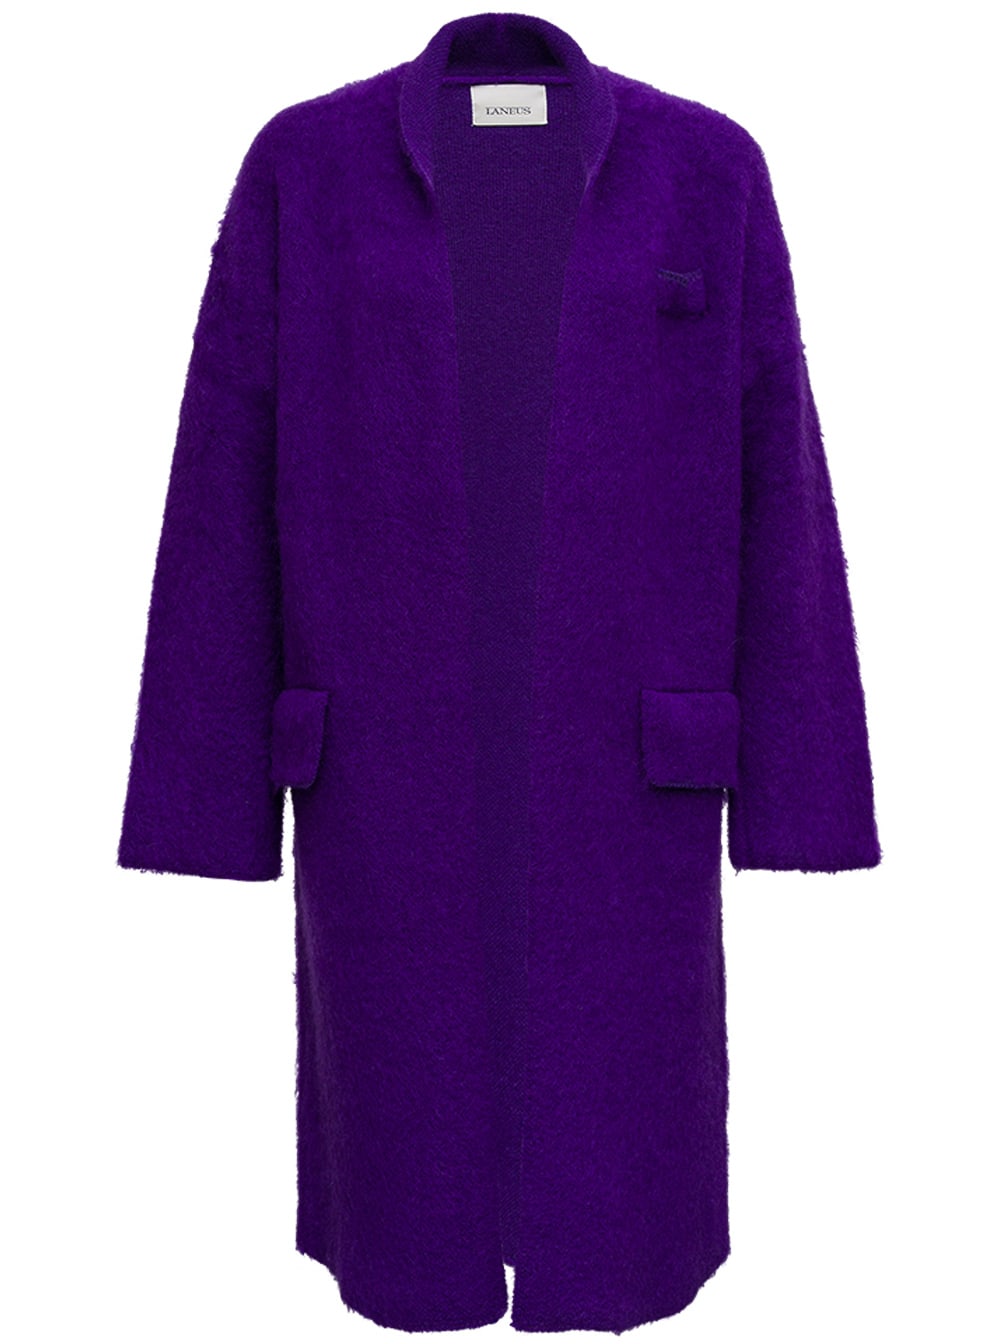 Laneus Wool Blend Purple Long Cardigan